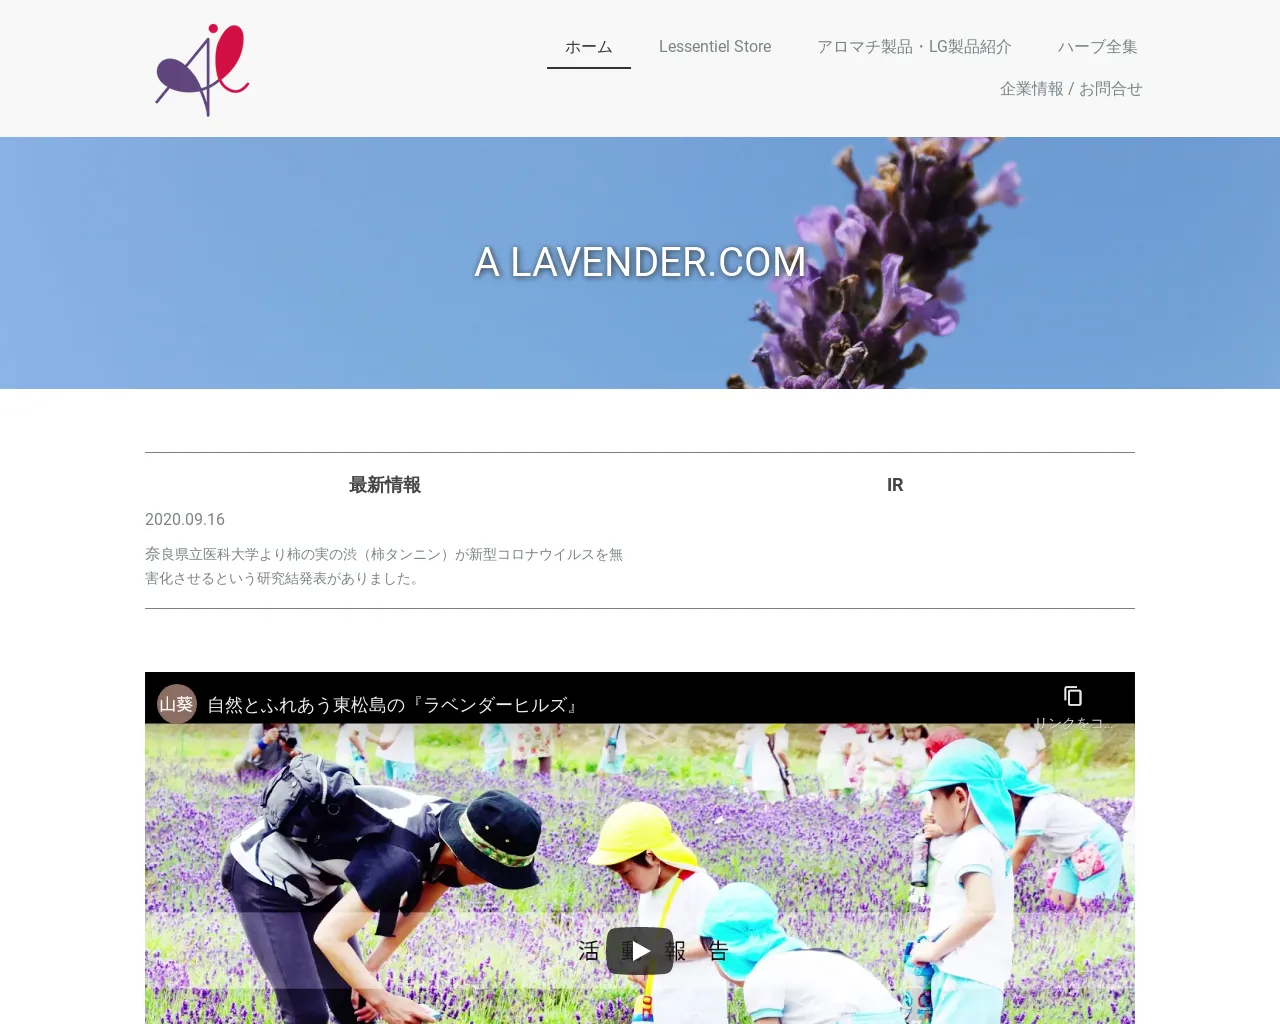 A LAVENDER.COM ㈱ site